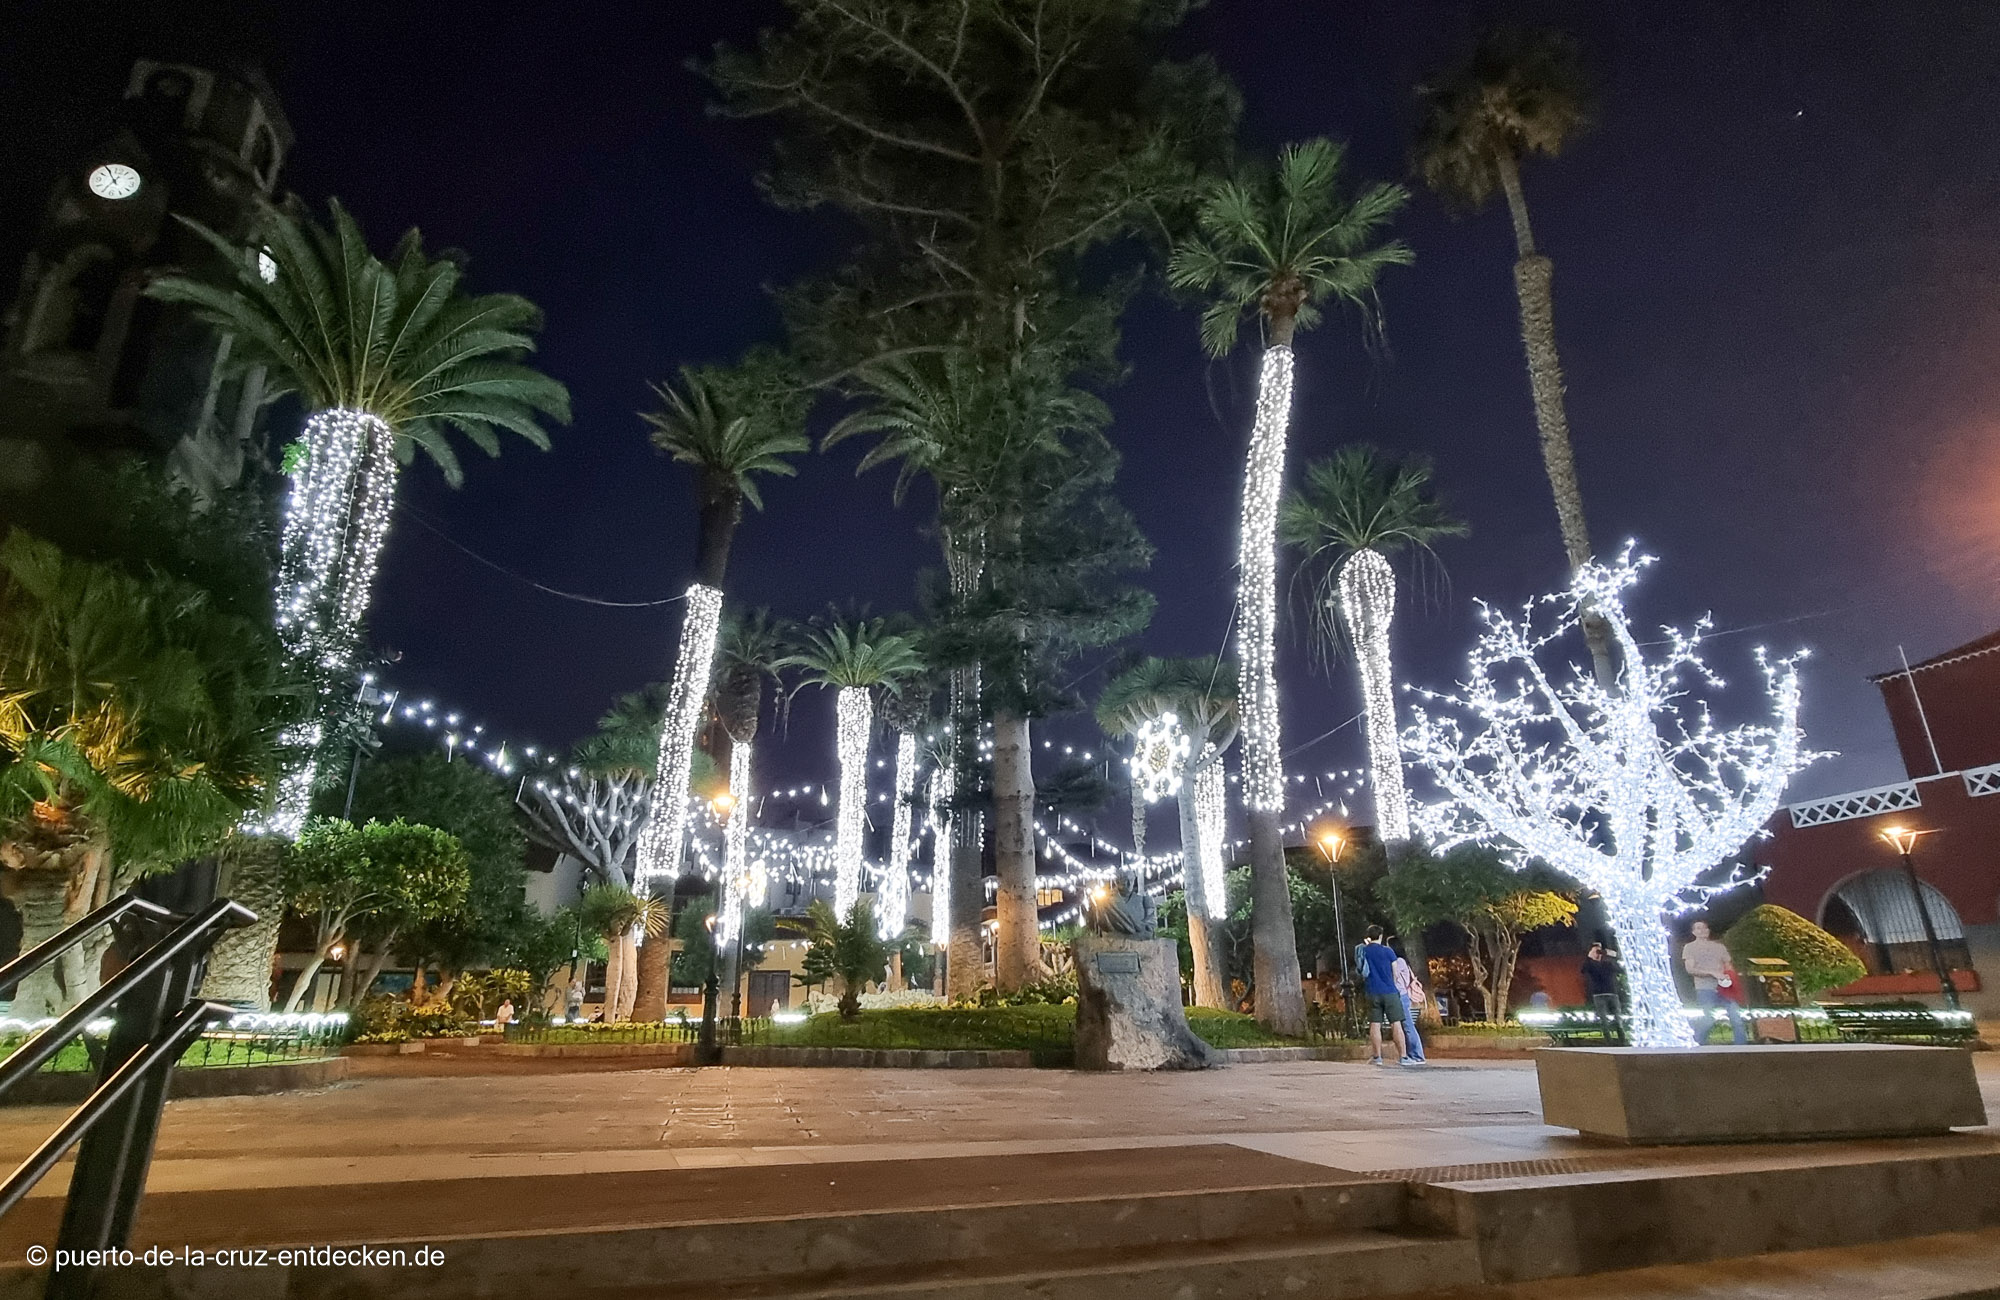 Weihnachten unter Palmen: In Puerto herrscht während der Advents- und Weihnachtszeit eine ganz besondere Atmosphäre.